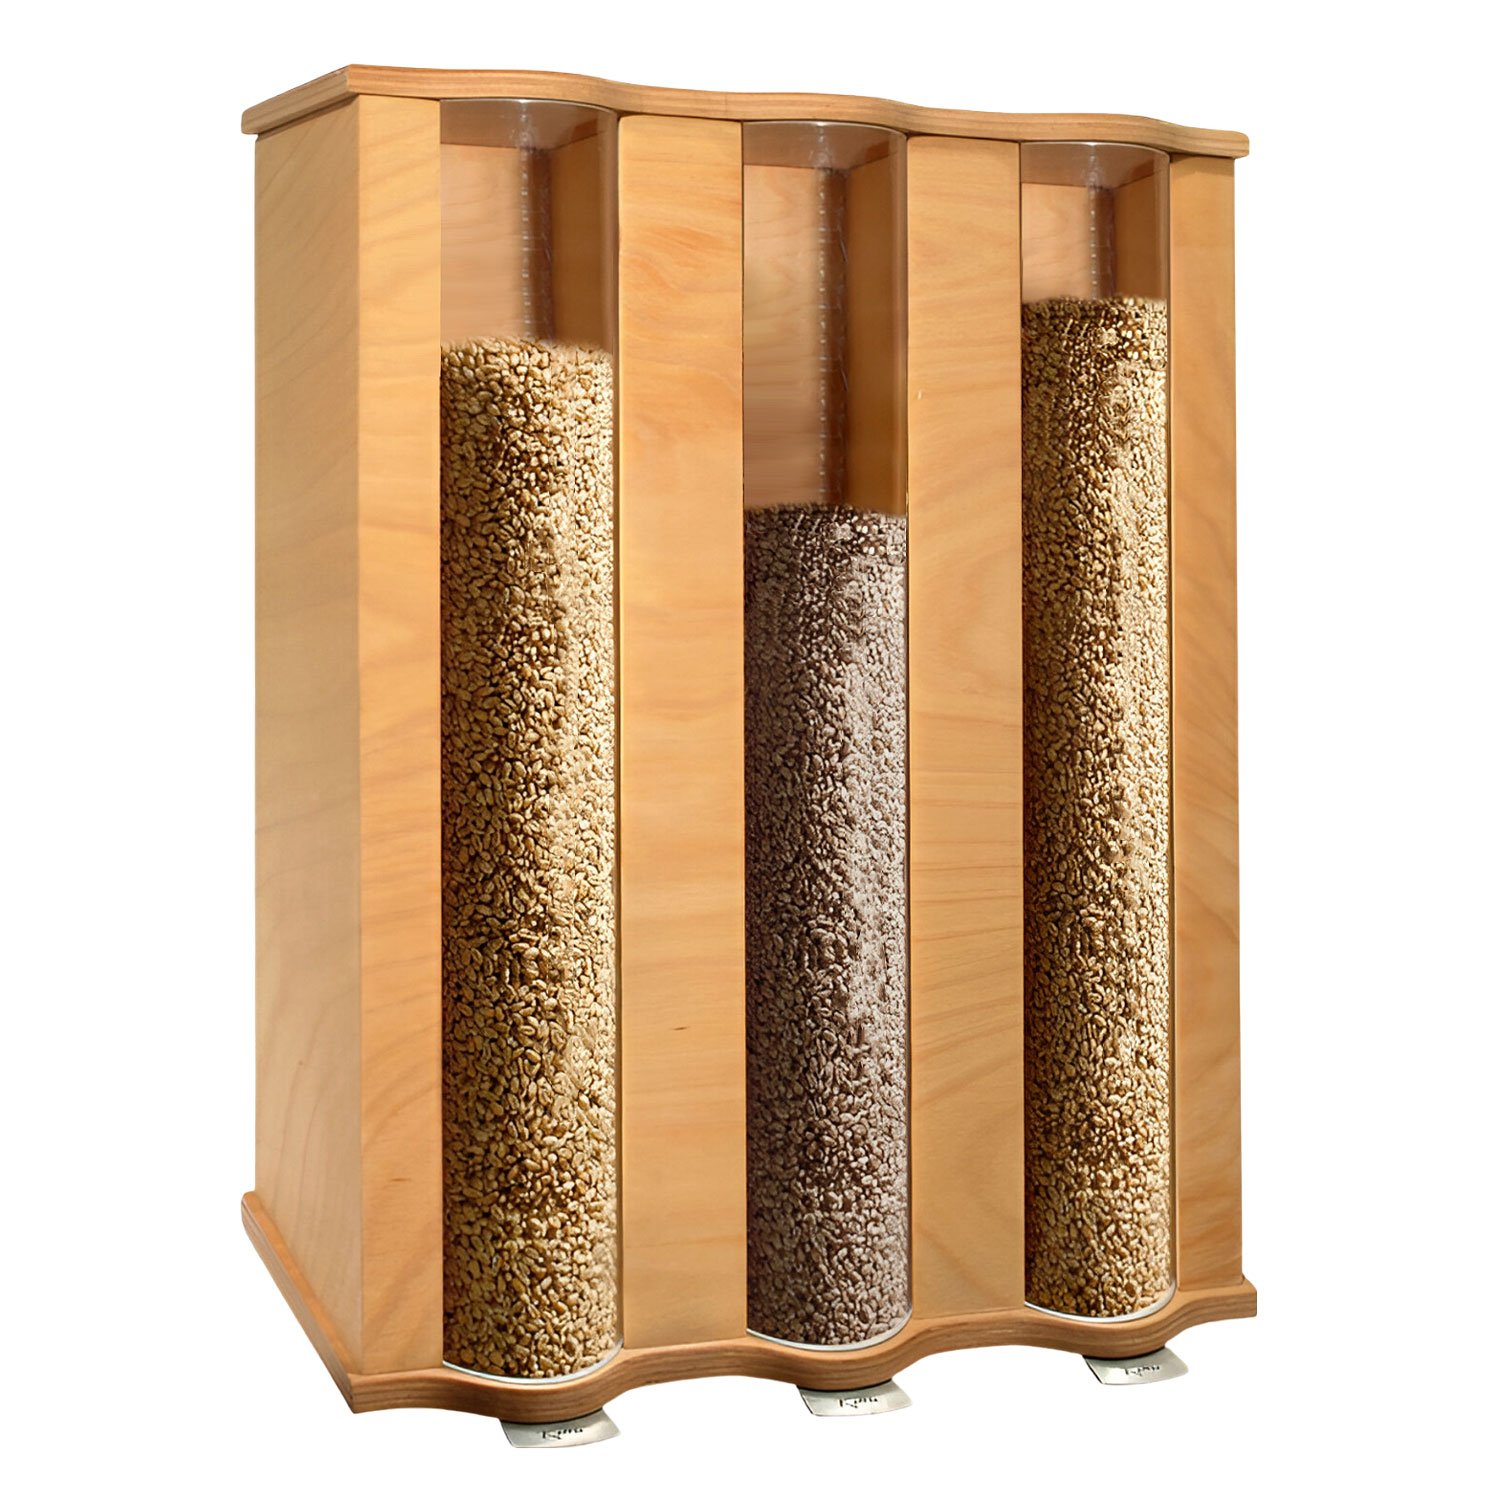 Bild zu KoMo Getreidespeicher - Getreidesilo für 3 x 4,5kg